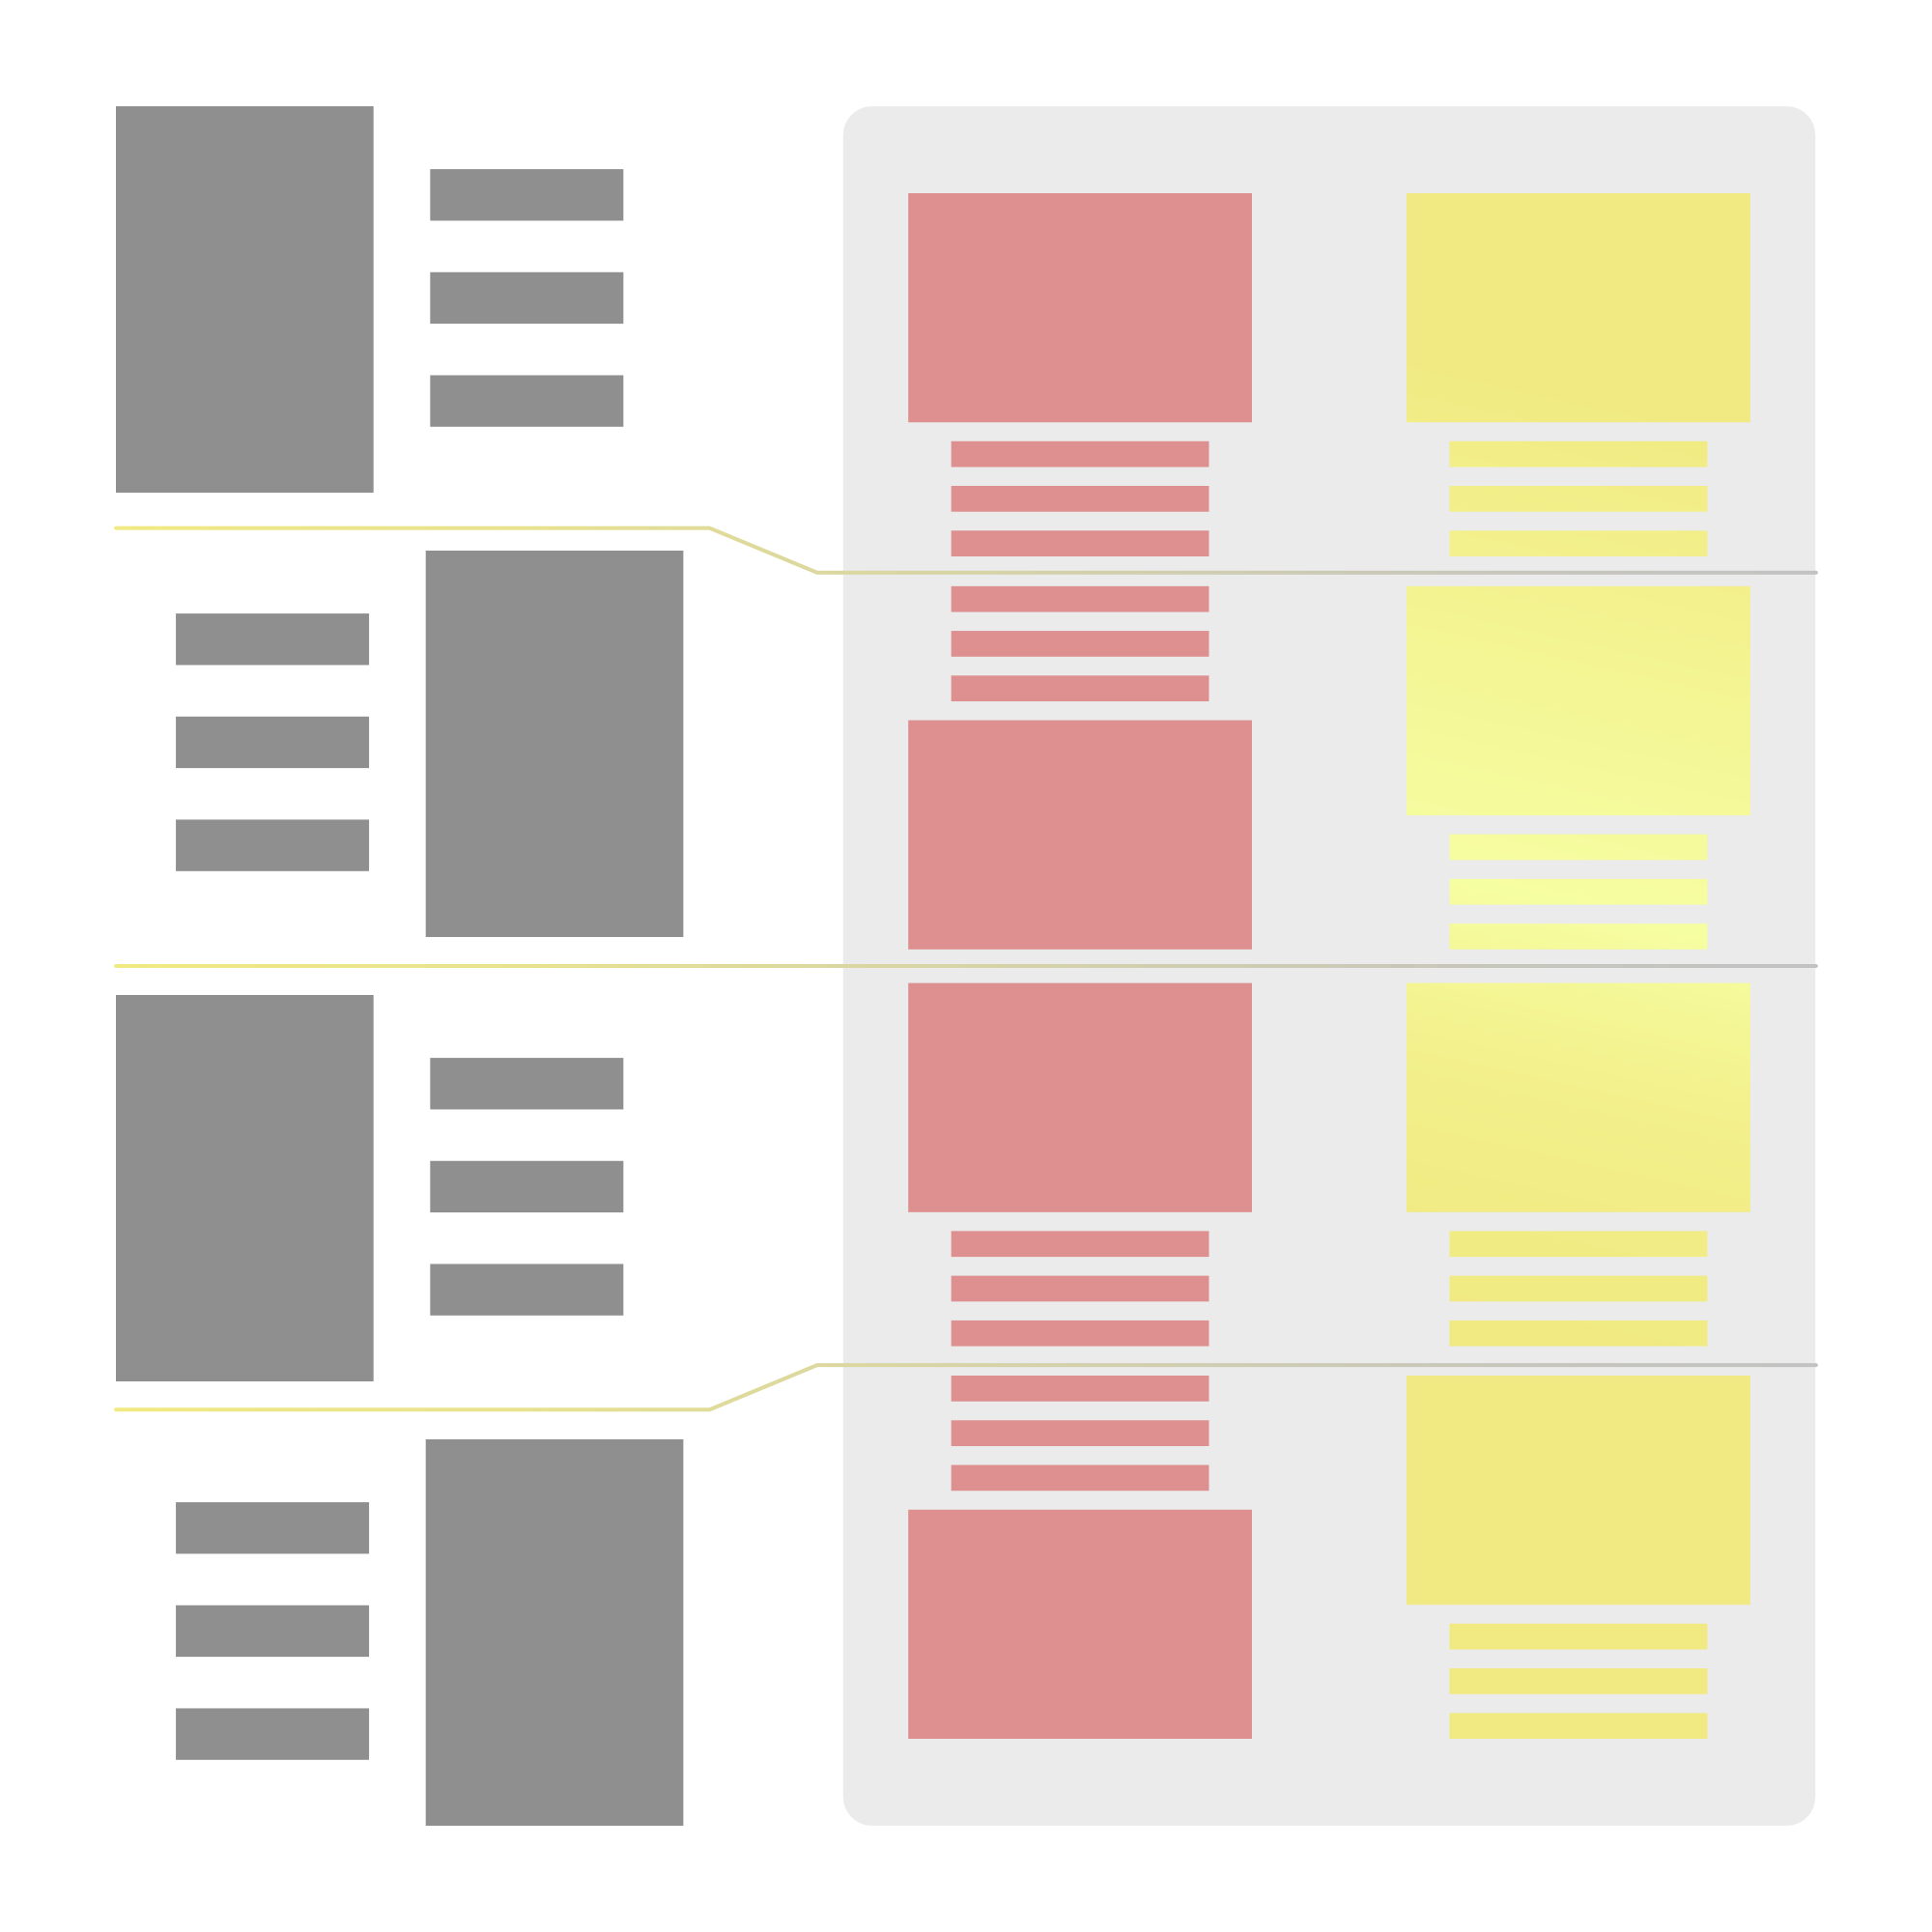 Medien und Text Block | Links in Grau ist die Desktopansicht, in der Mitte in Rot ist das Standardverhalten wenn es auf mobilen Geräten gestapelt werden soll, wie ich mir das ganze gewünscht habe siehst du rechts in Gelb 